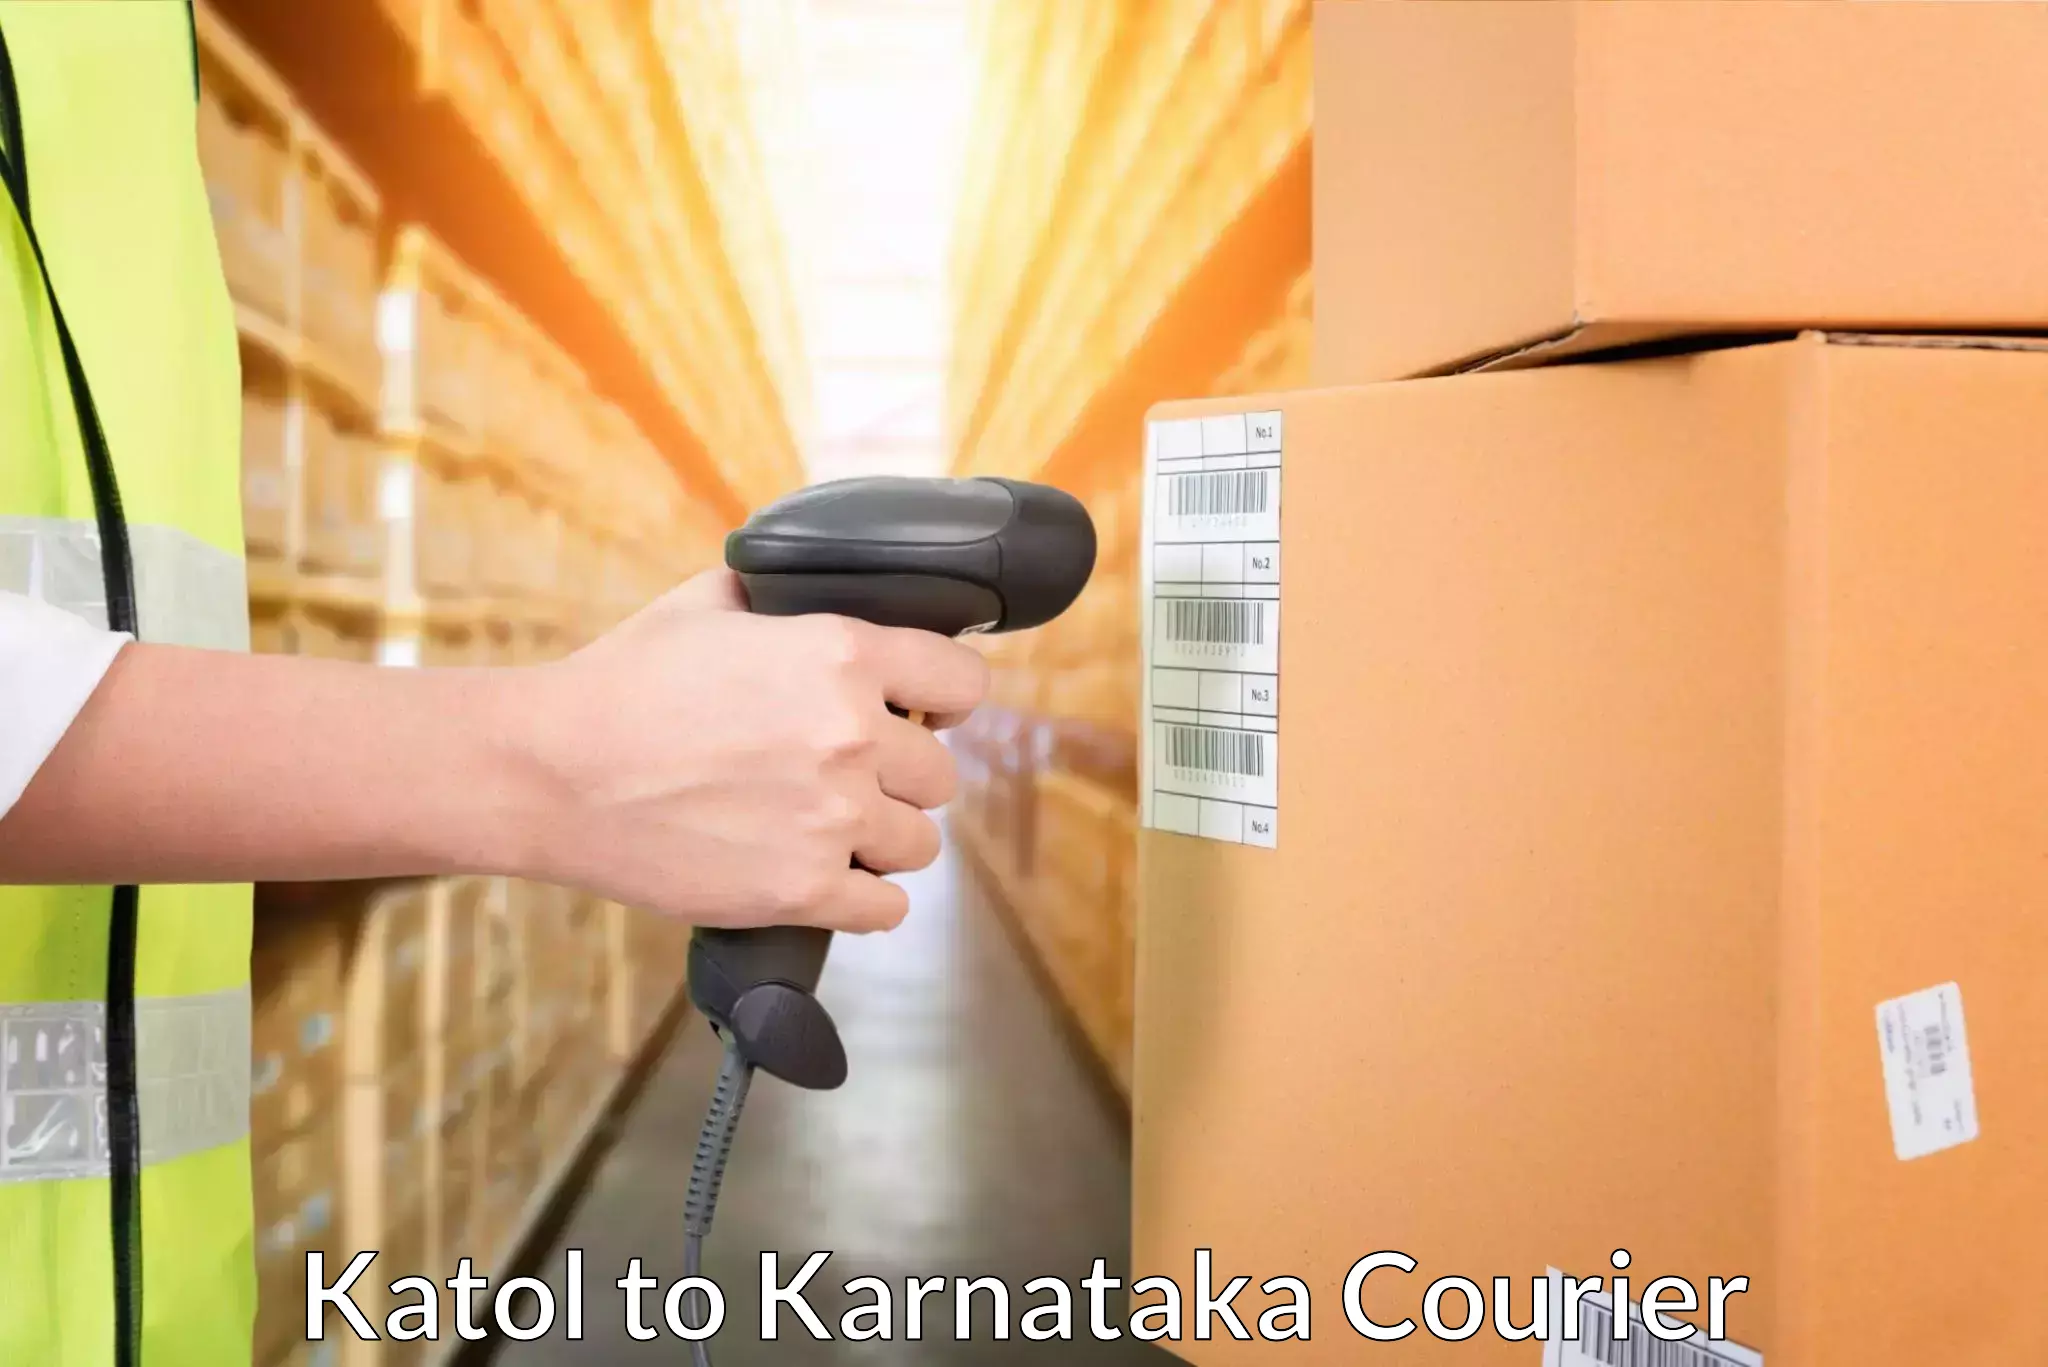 Efficient cargo handling Katol to Karnataka